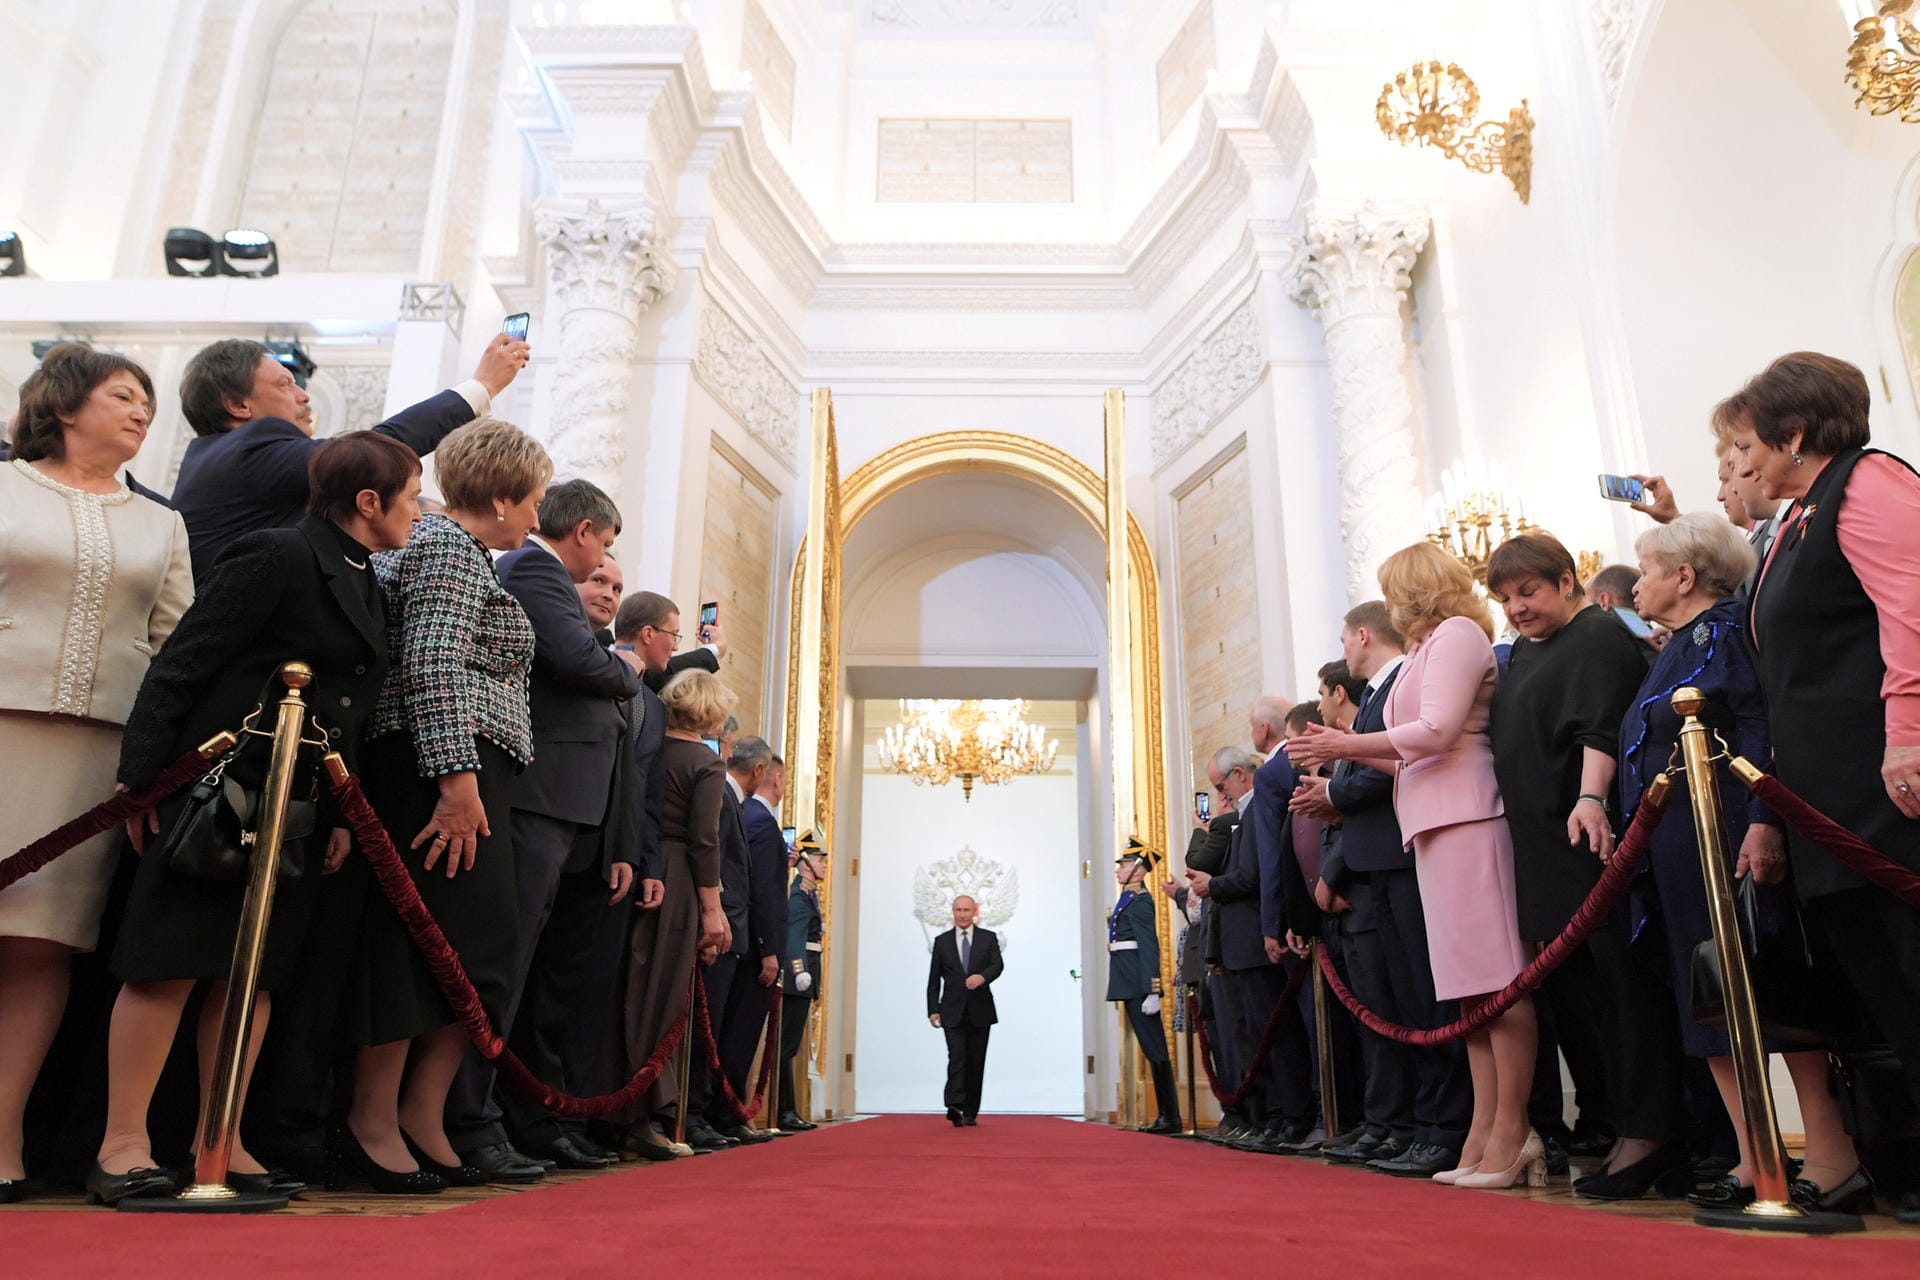 Auftritt des alten und neuen Präsidenten: Putin betritt durch eine goldbeschlagene Tür den Georgssaal im Kreml.